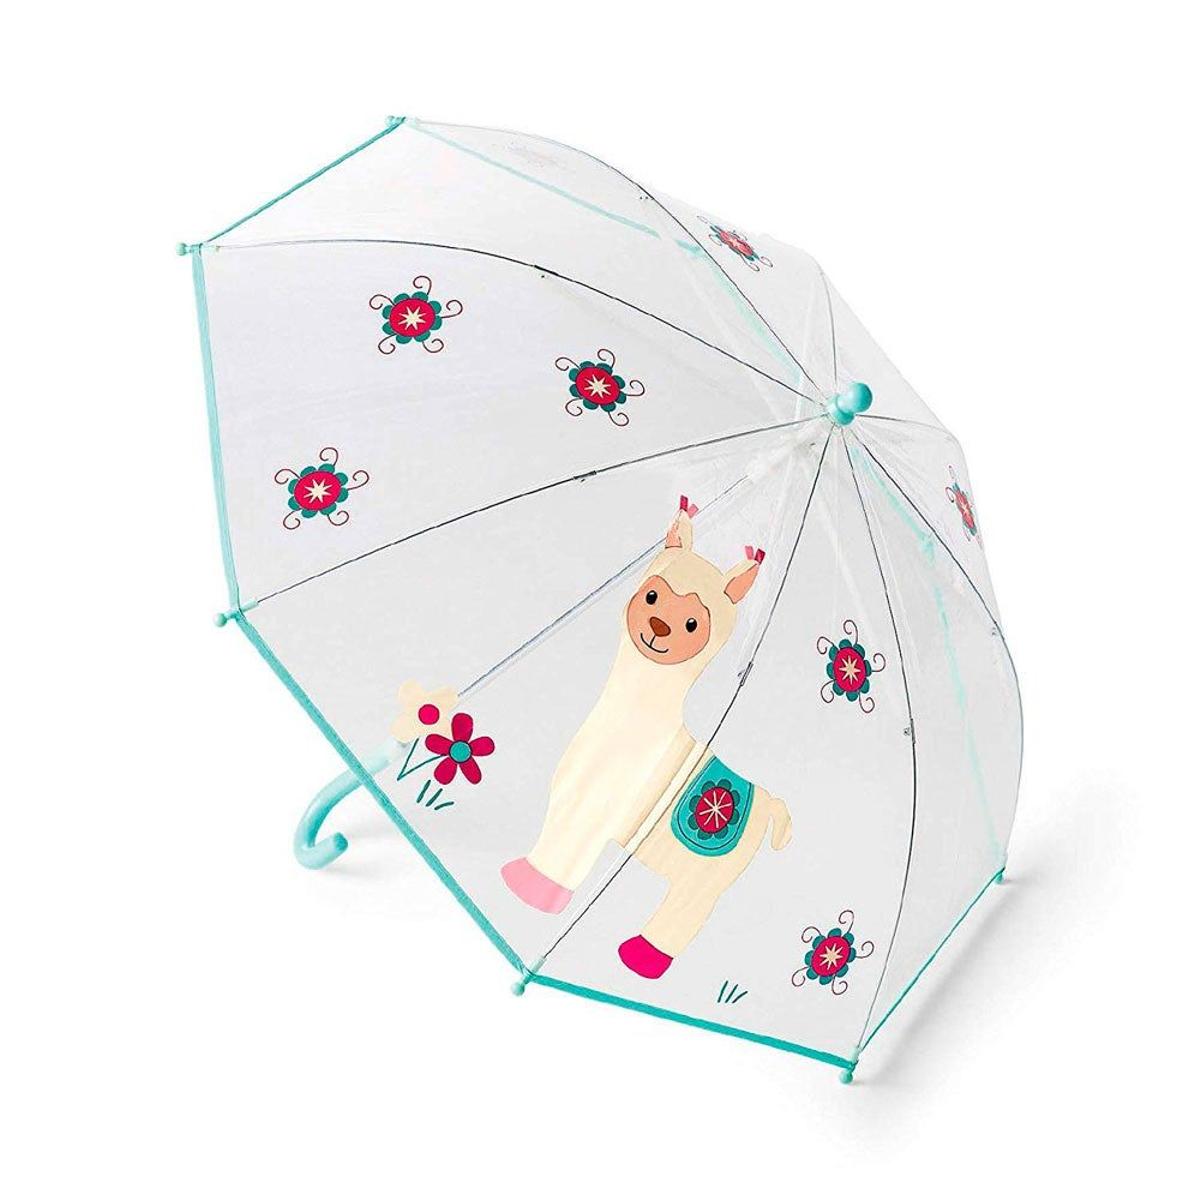 Paraguas de alpaca de Amazon (precio: 9,99 euros)